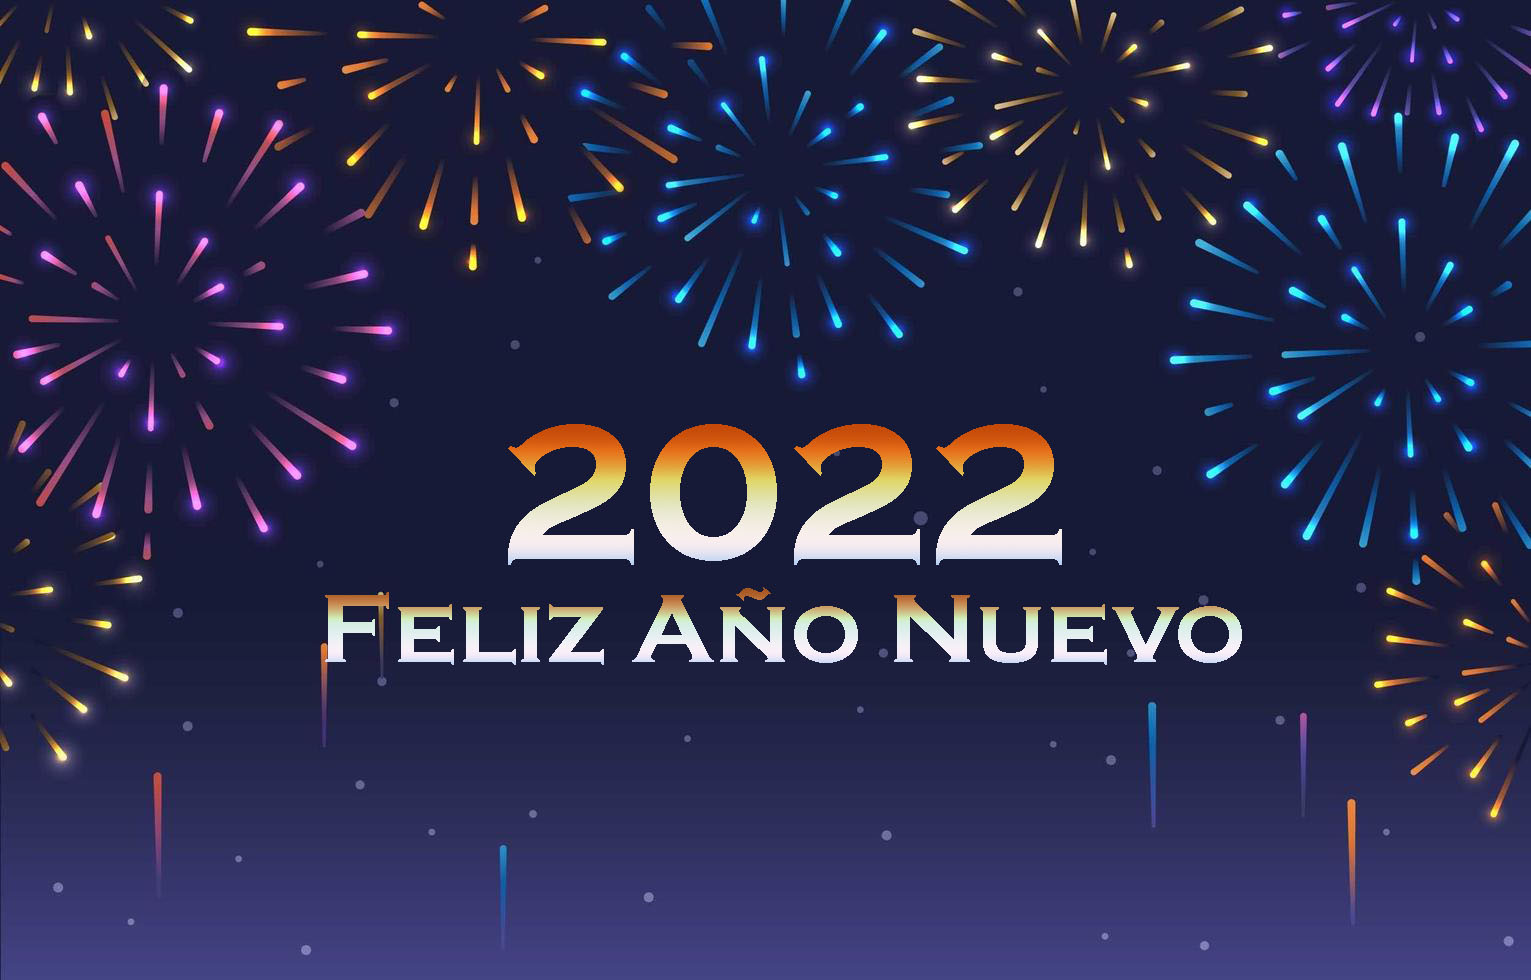 Las mejores frases para desear Feliz Año Nuevo 2022 por WhatsApp a amigos y familiares